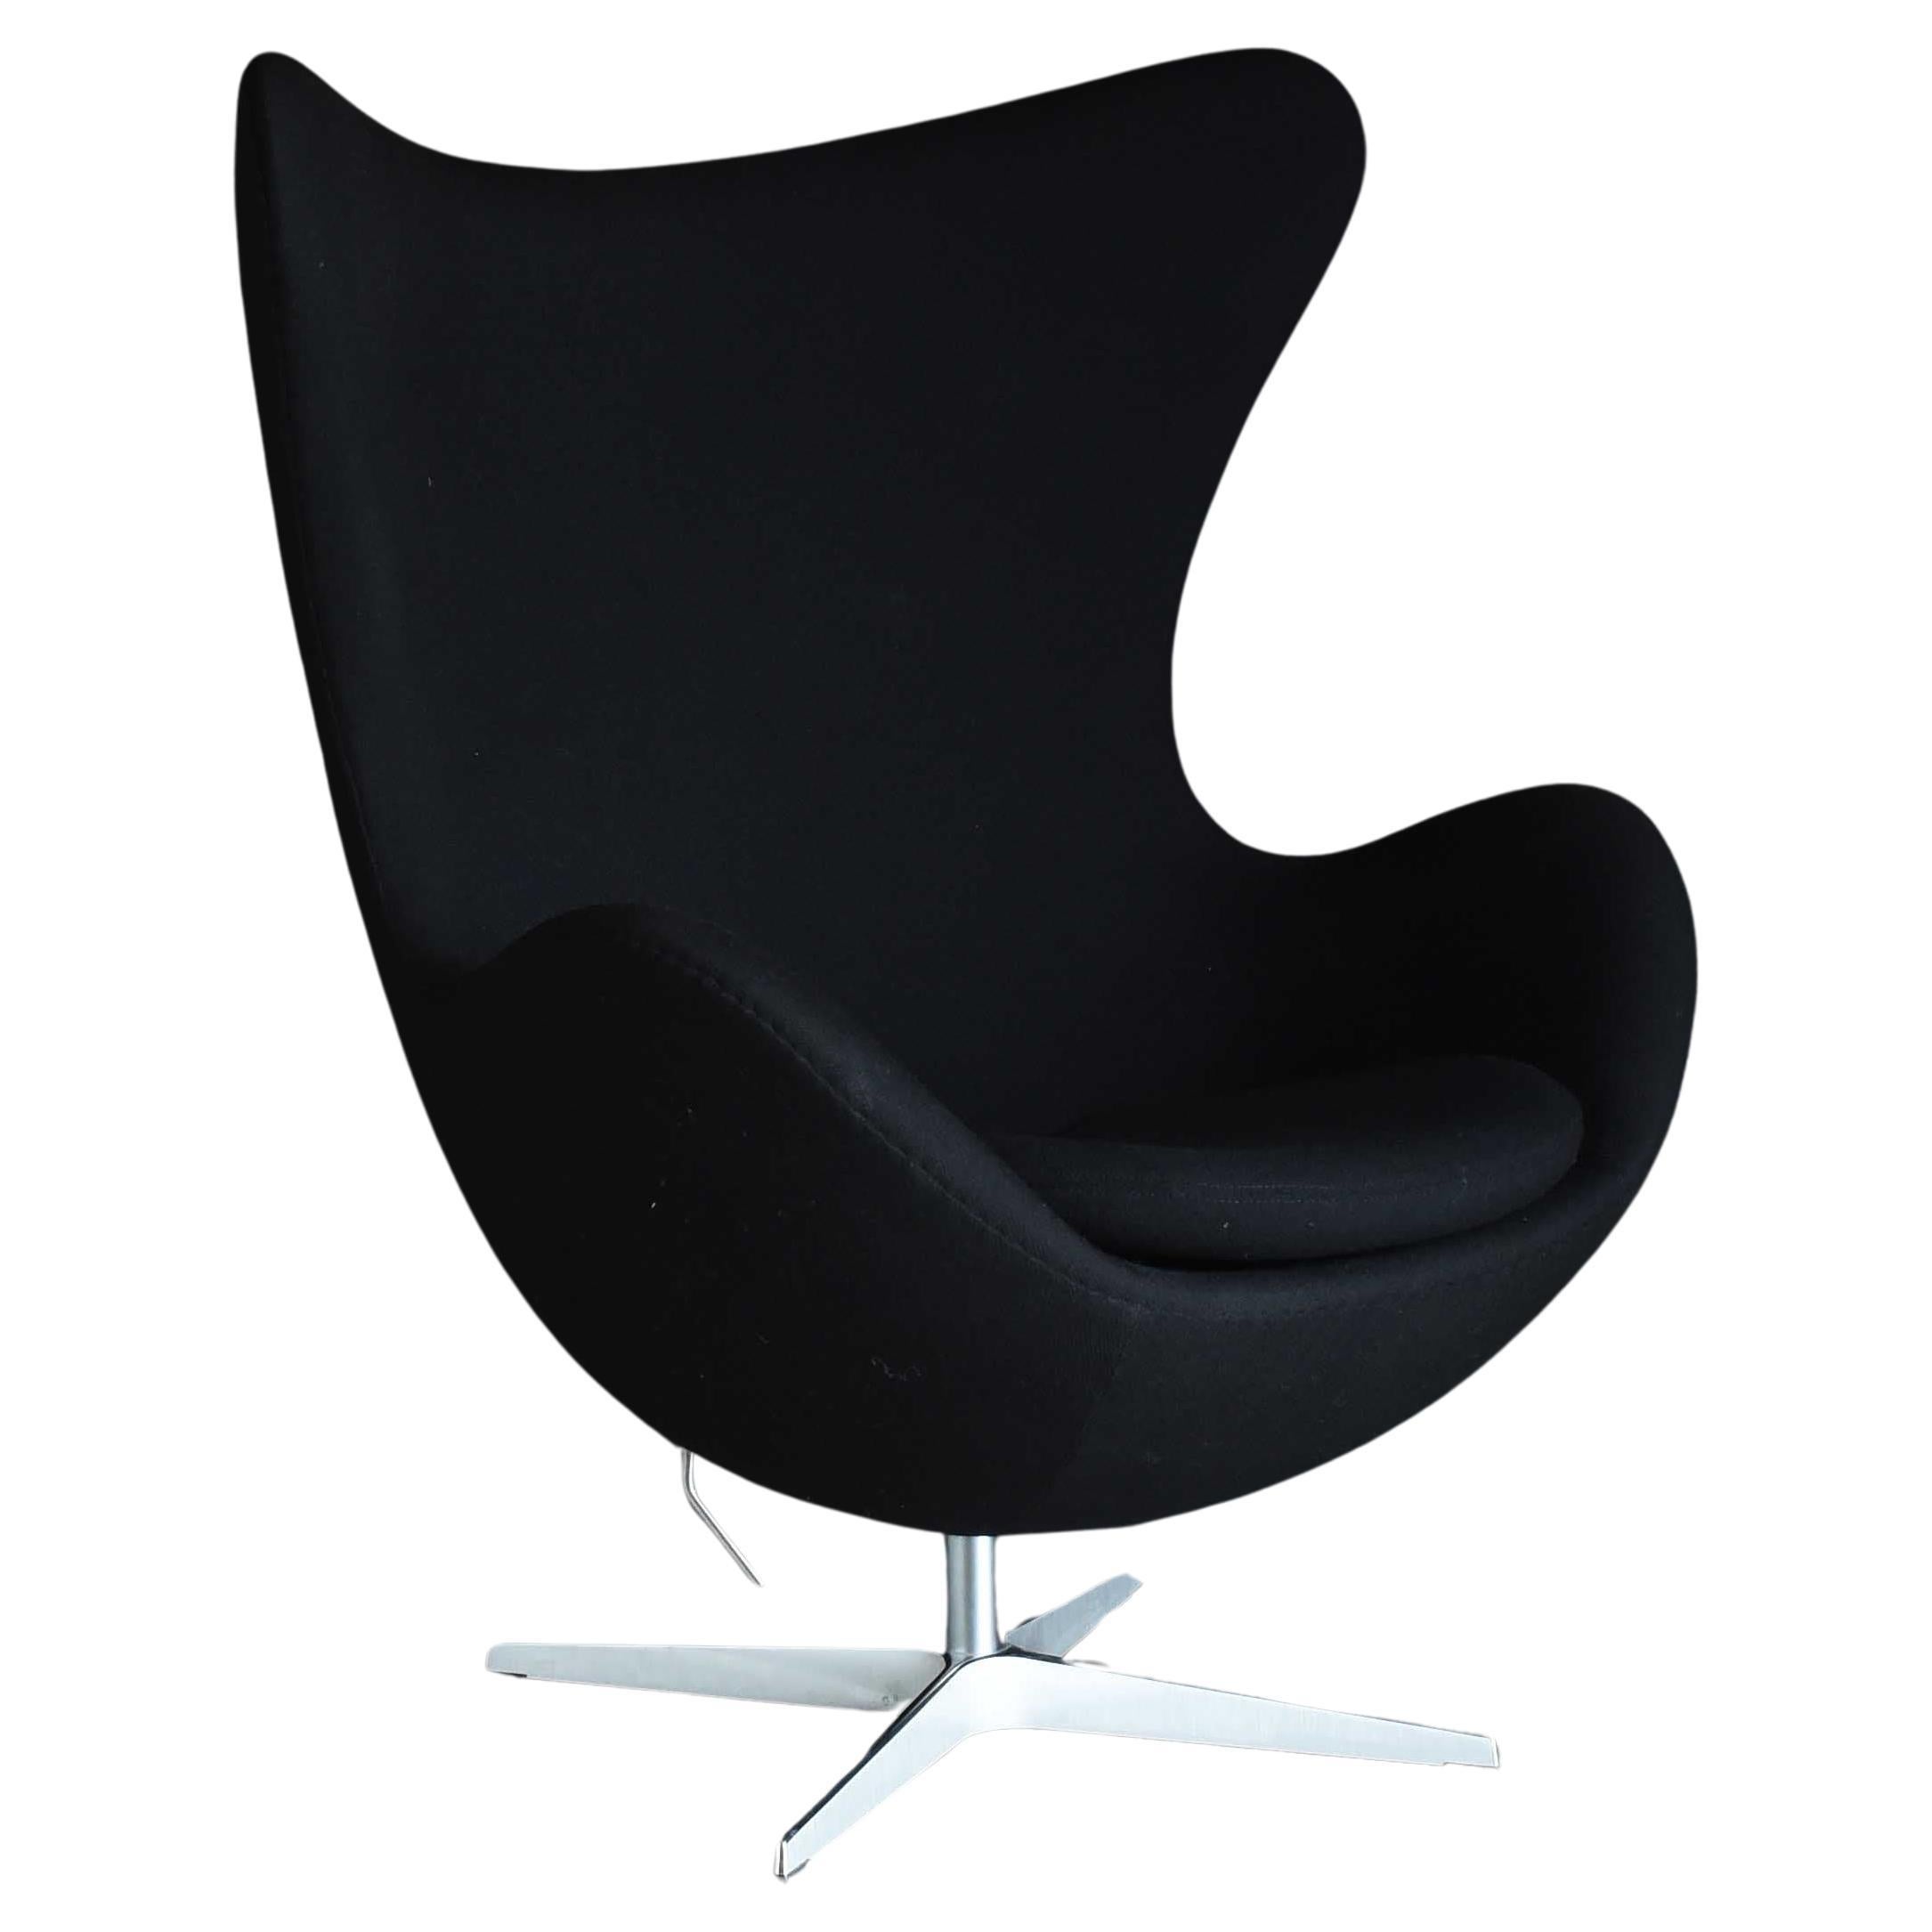 Arne Jacobsen, Midcentury Modern "Egg" Lounge Chair 3316